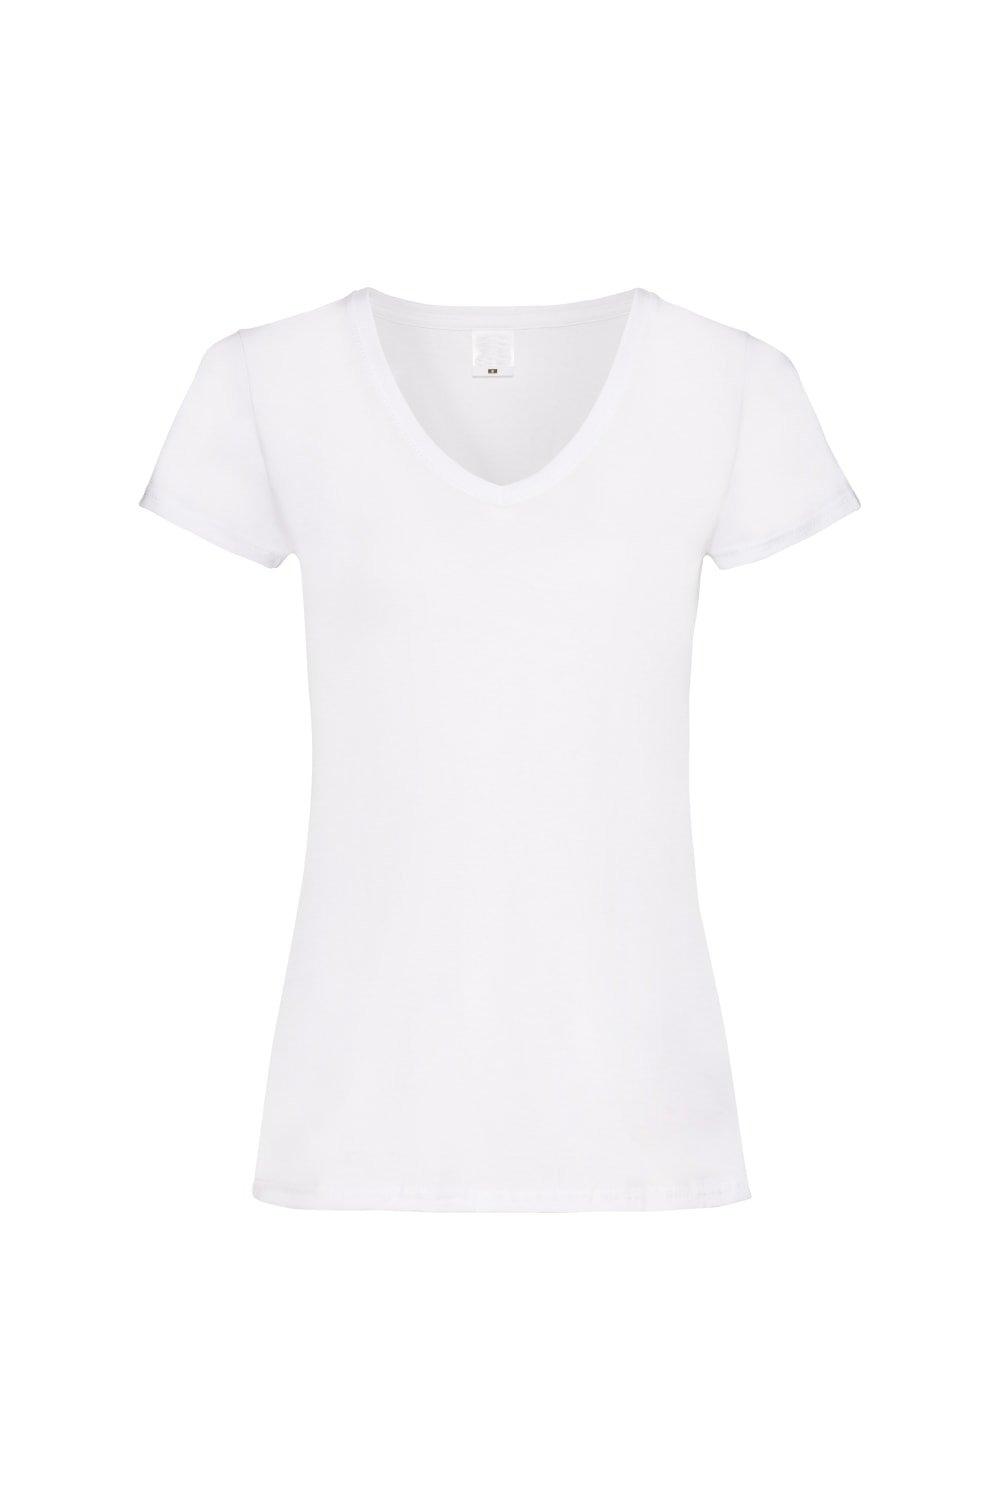 Повседневная футболка Value с V-образным вырезом и короткими рукавами Universal Textiles, белый футболка женская размер xl цвет серый меланж